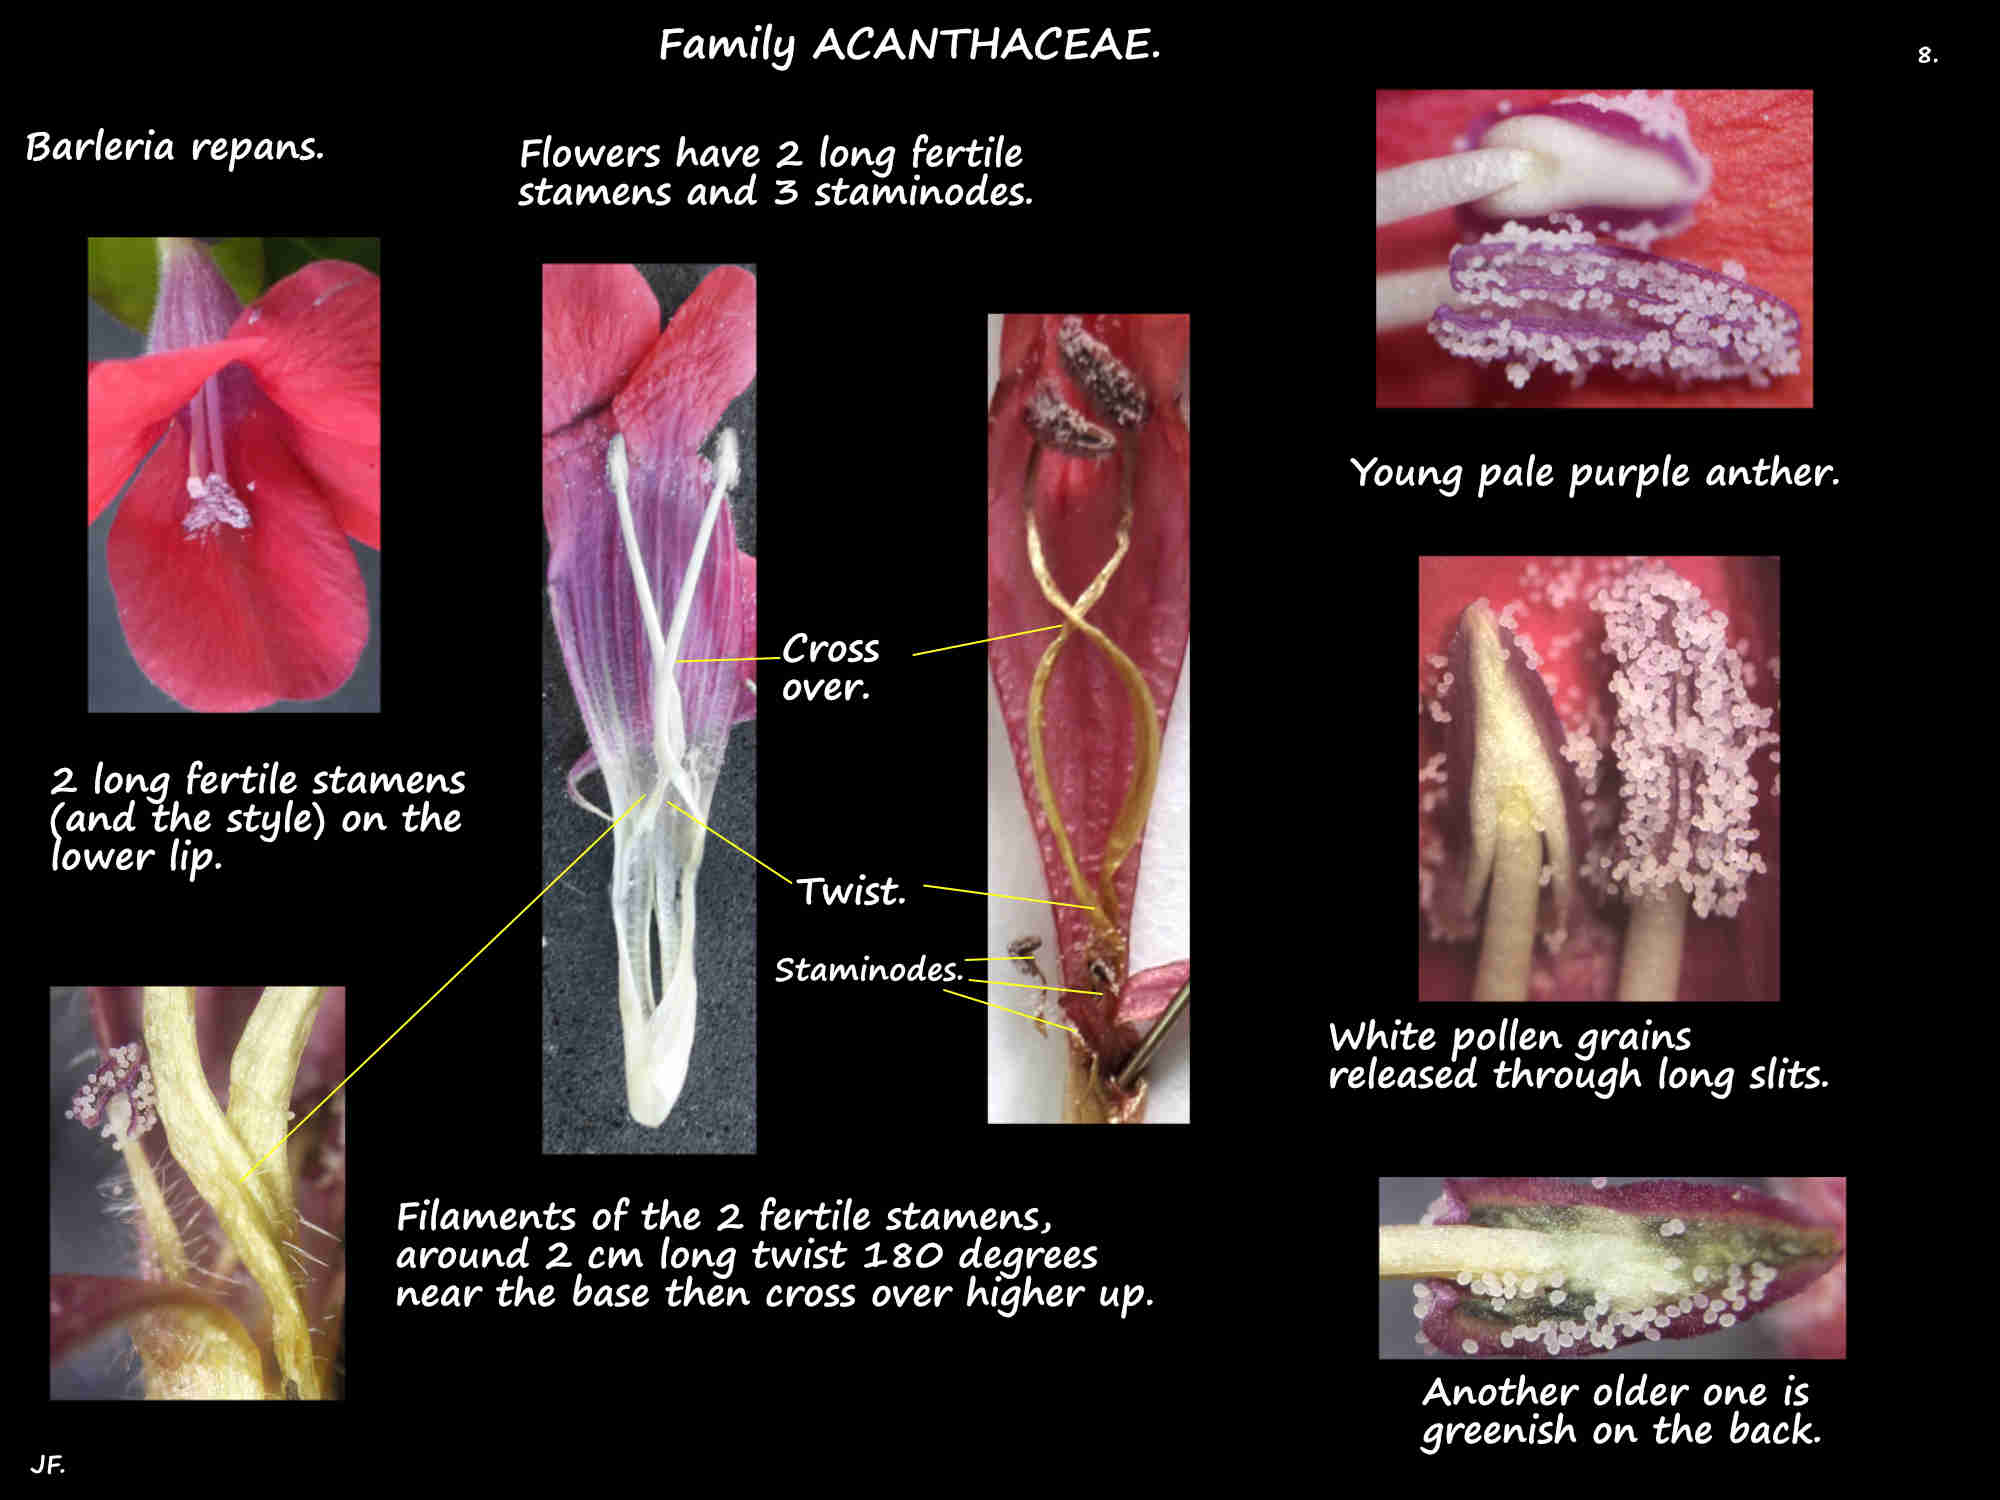 8 The 2 fertile stamens of Barleria repans flowers